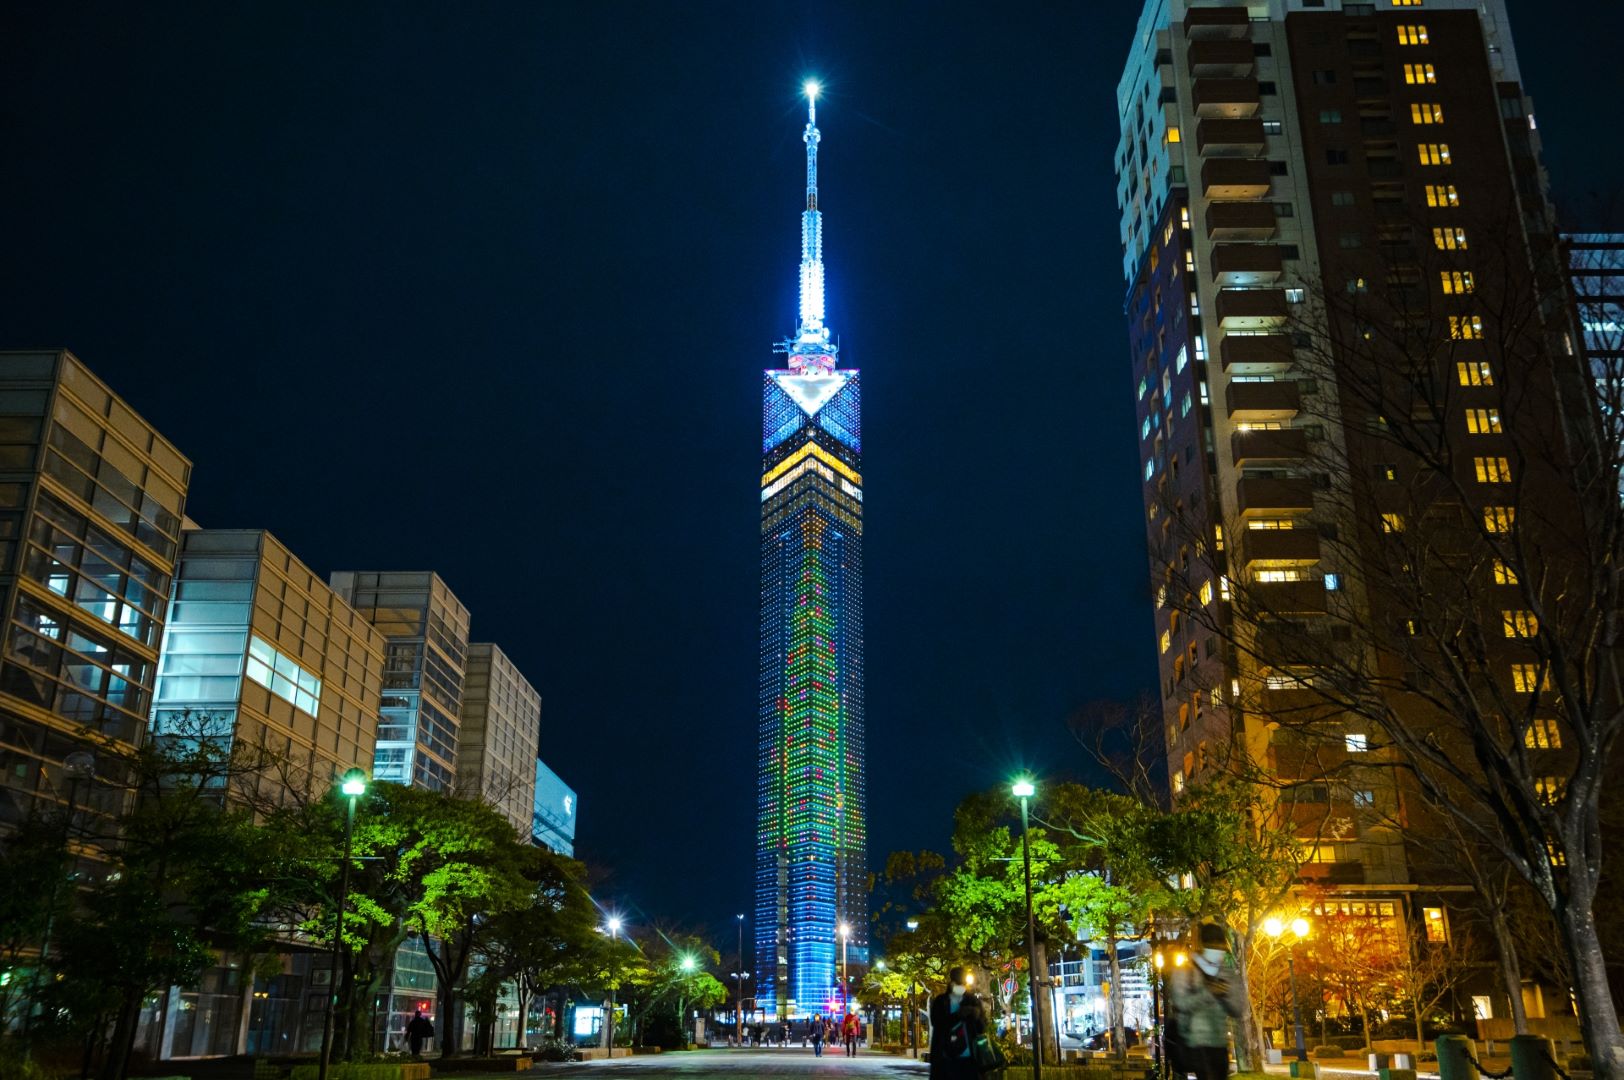 Fukuoka Tower in Momochi Fukuoka City